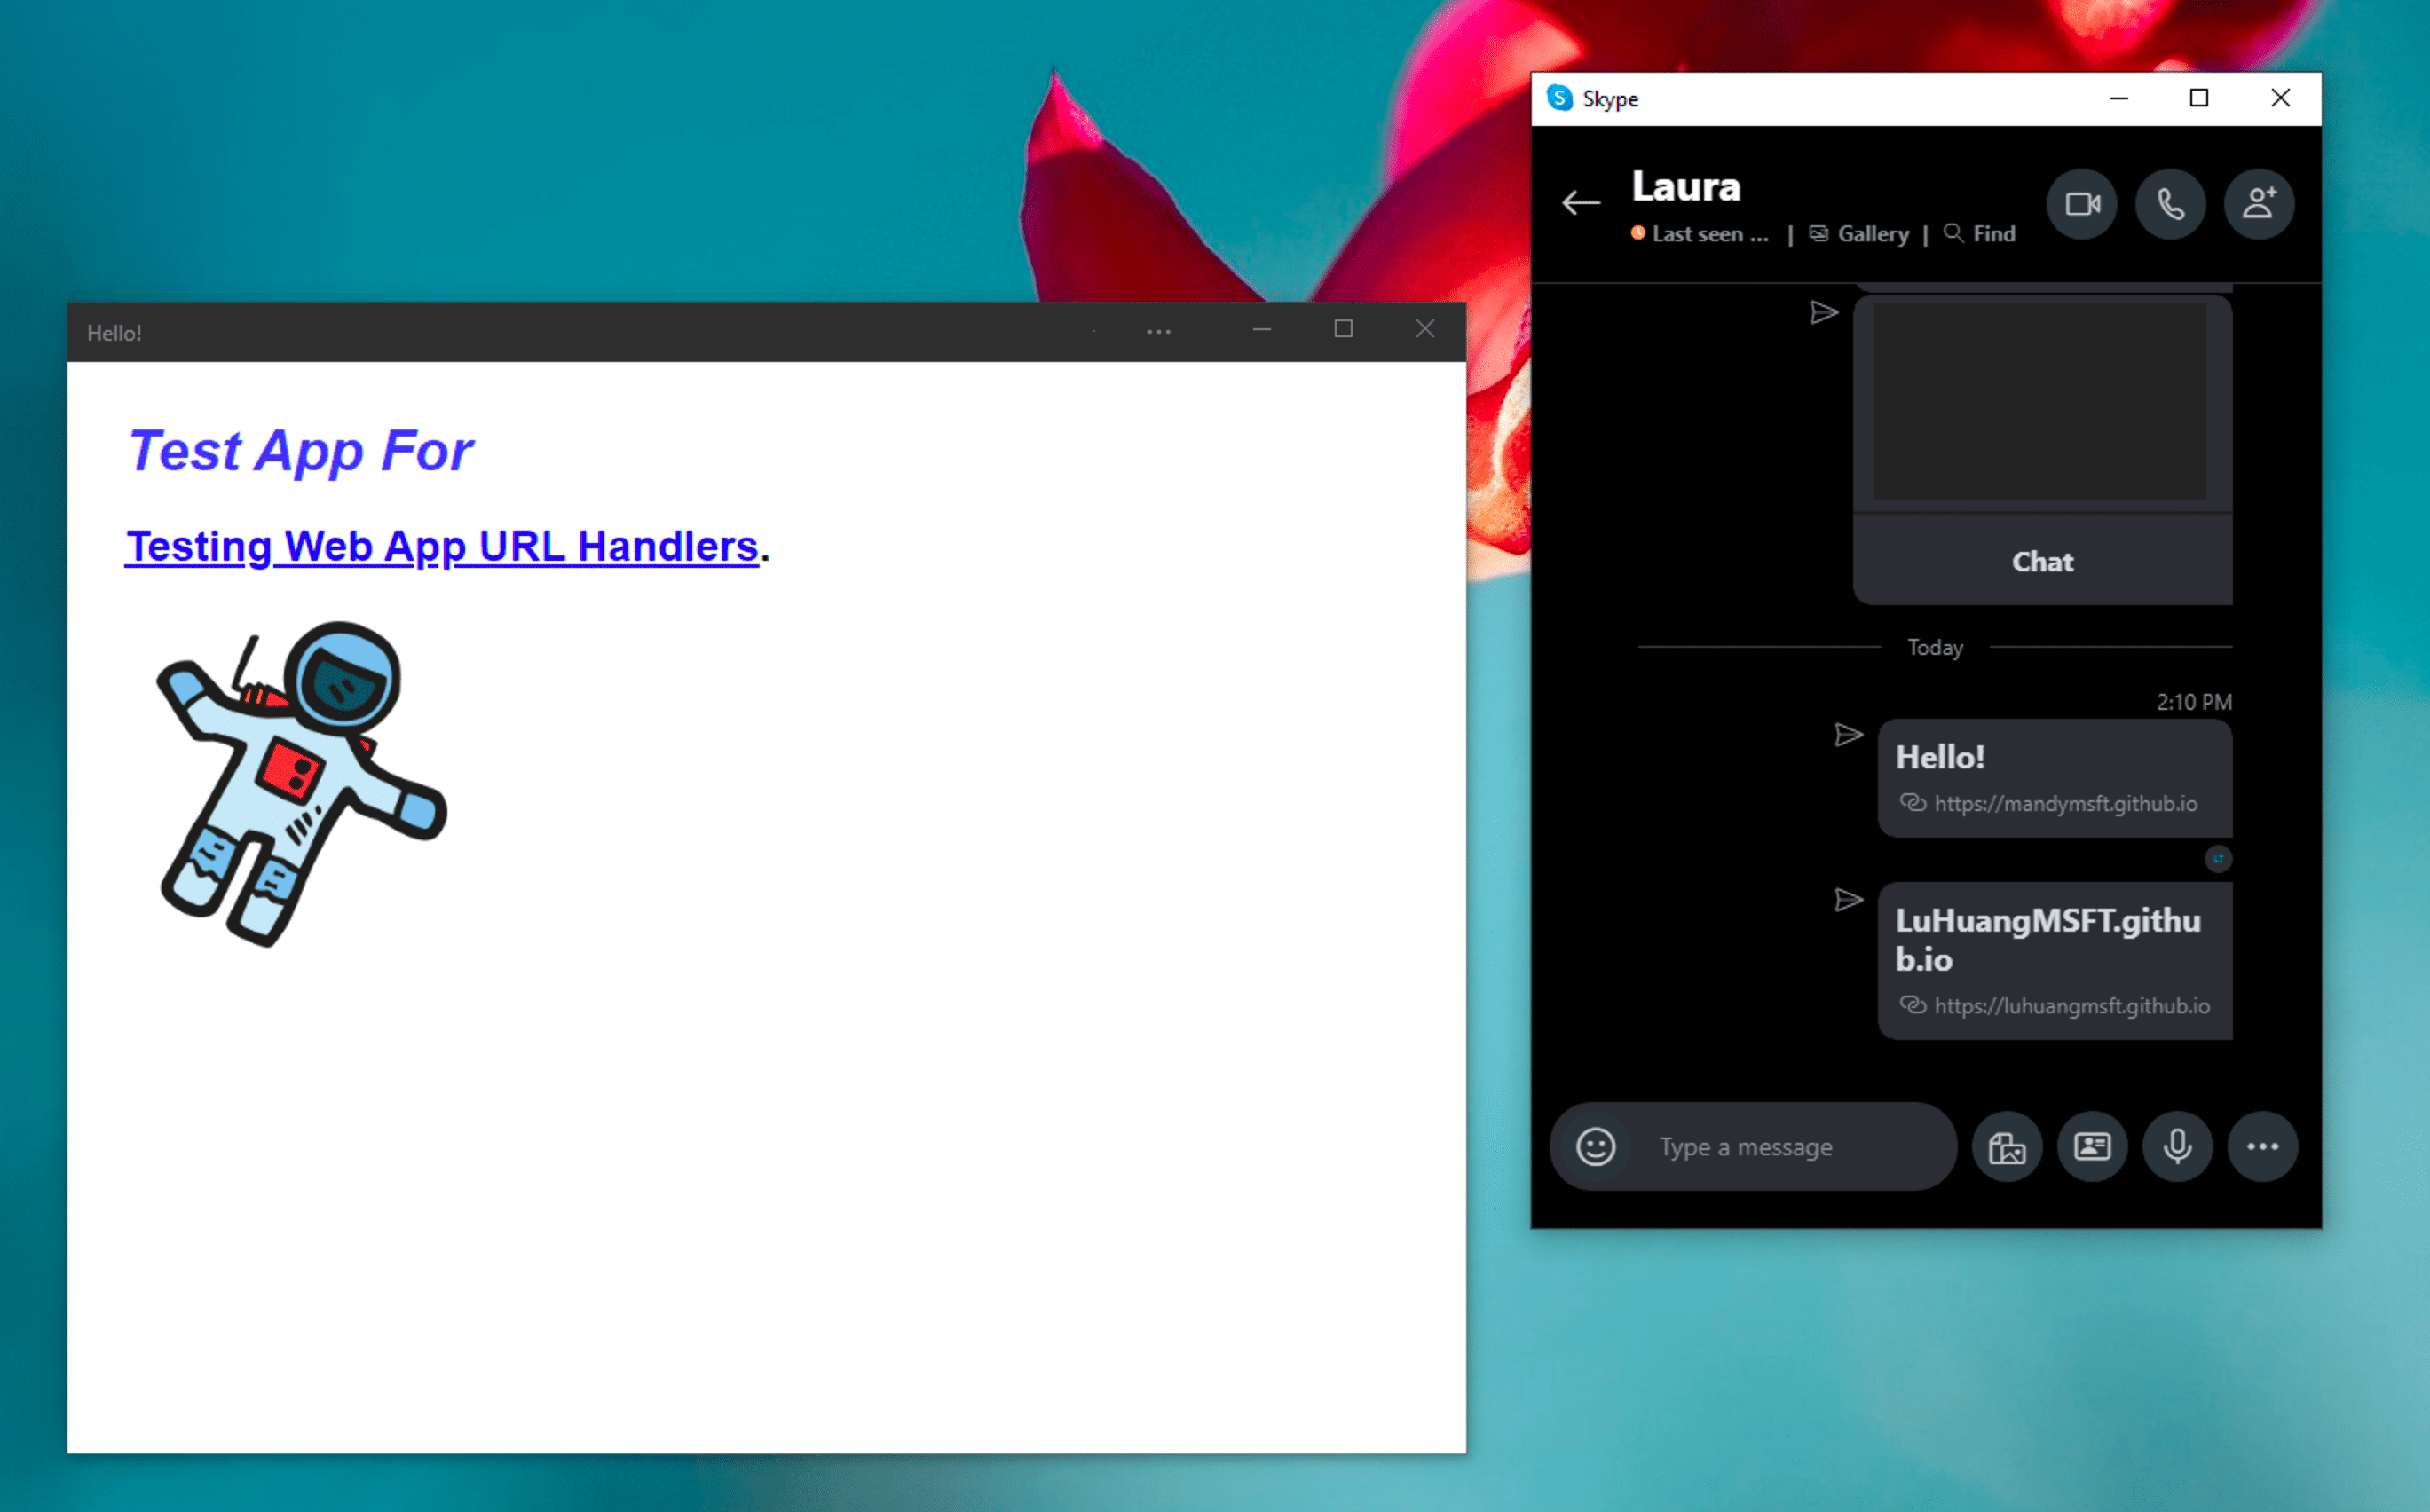 برنامه پیام رسان فوری اسکایپ ویندوز در کنار PWA آزمایشی نصب شده، که پس از کلیک روی پیوندی که توسط آن در پیام چت اسکایپ انجام می شود، در حالت مستقل باز می شود.